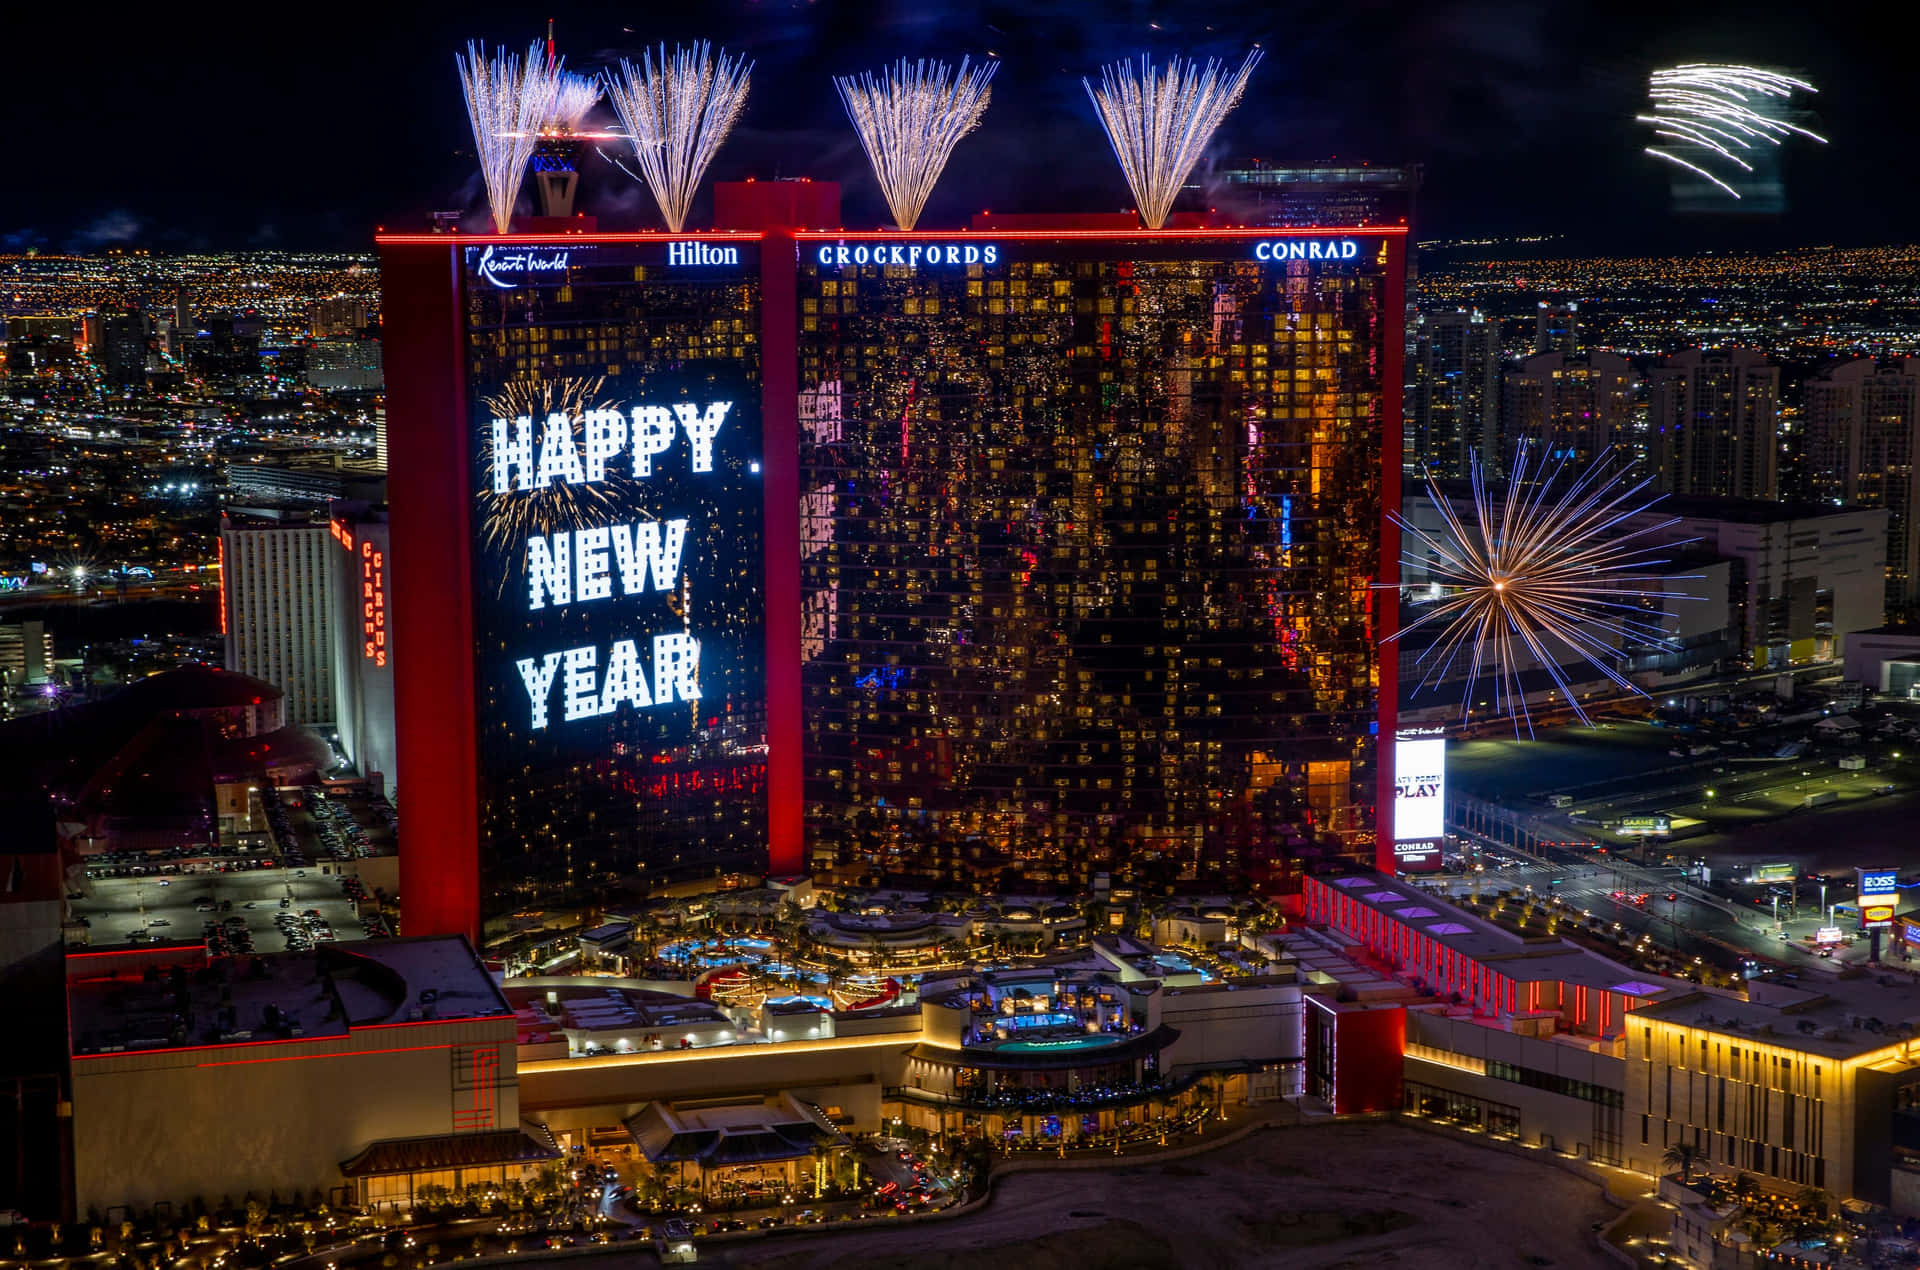 Happy New Year At The Harrah's Las Vegas